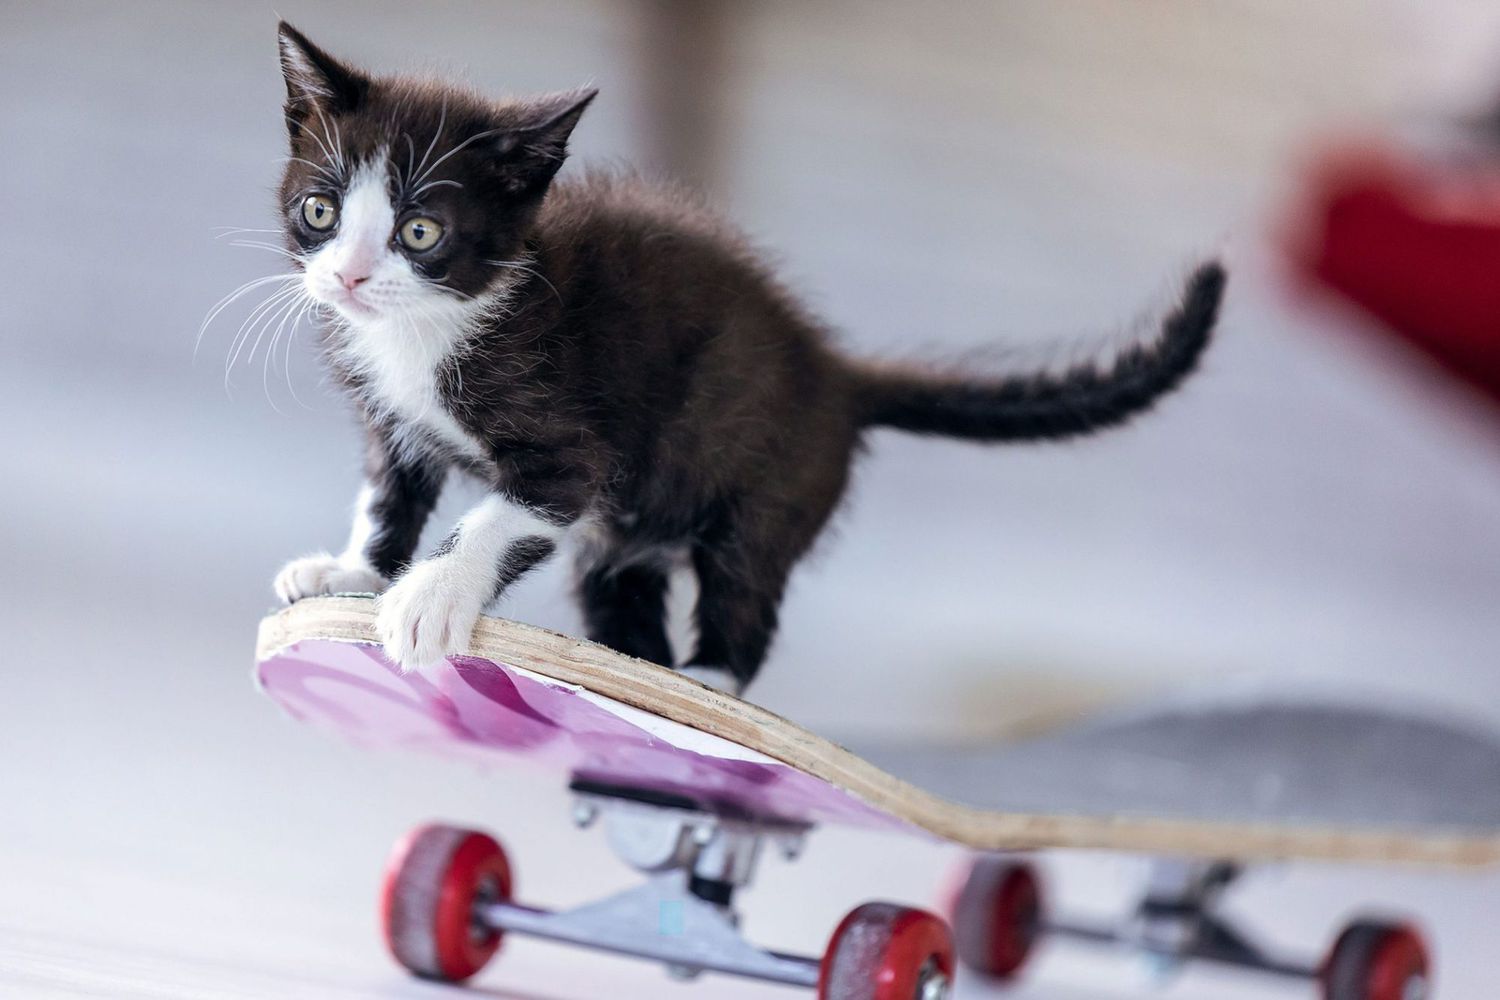 black and white kitten on skateboard; black and white cat names